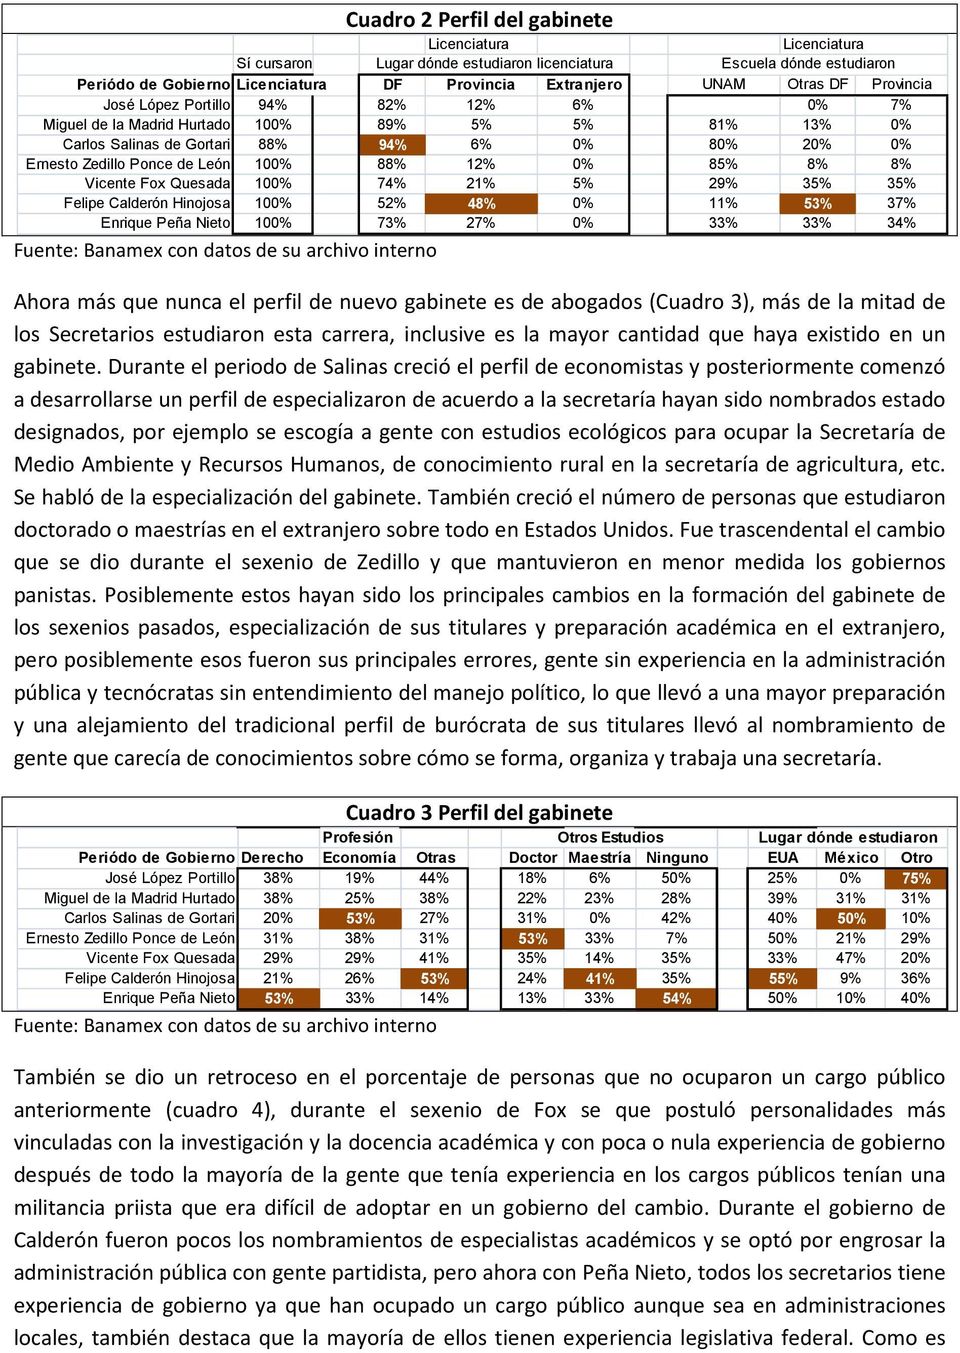 12% 0% 85% 8% 8% Vicente Fox Quesada 100% 74% 21% 5% 29% 35% 35% Felipe Calderón Hinojosa 100% 52% 48% 0% 11% 53% 37% Enrique Peña Nieto 100% 73% 27% 0% 33% 33% 34% Ahora más que nunca el perfil de